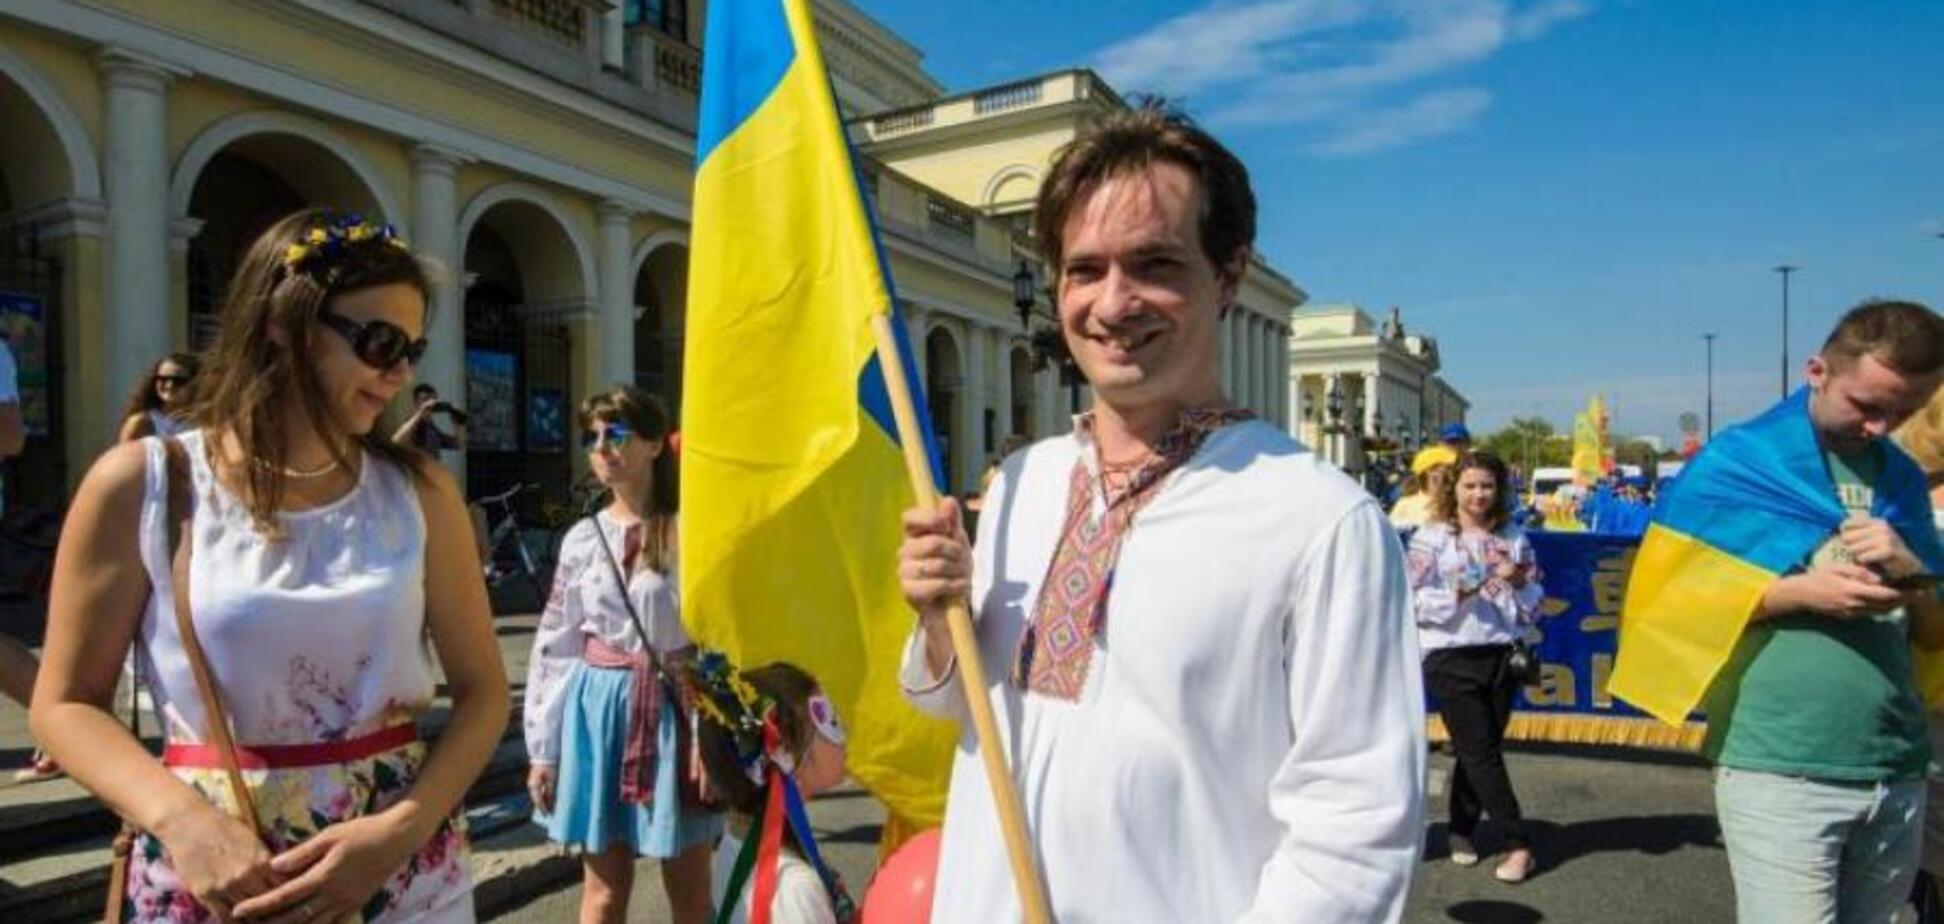 Броня от плана 'Новороссии': журналист рассказал о важном нюансе с украинским языком